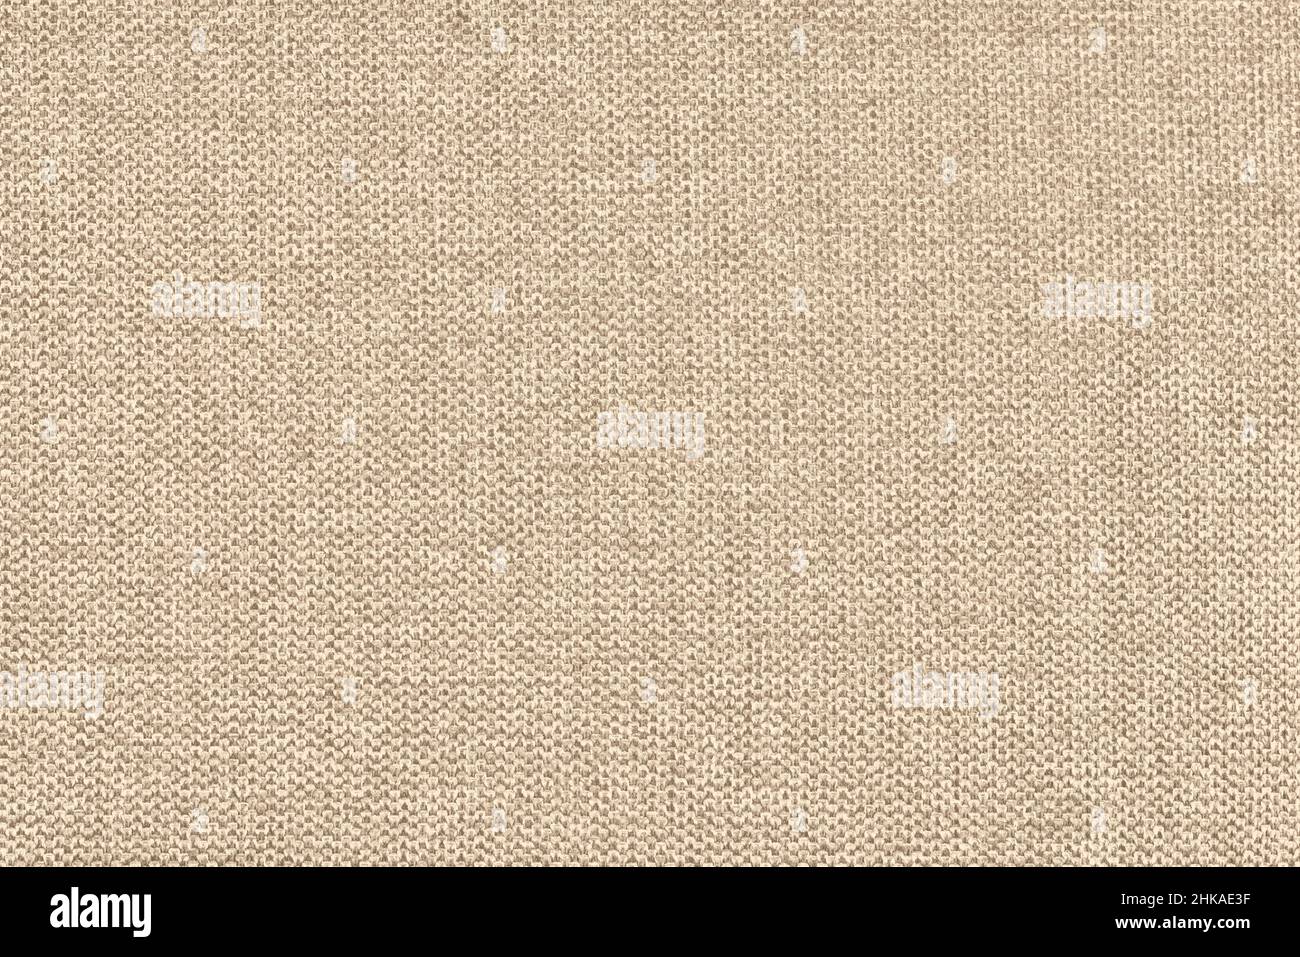 Sofá tejido de algodón beige cojín tela textura fondo. Fotografía de alta resolución Foto de stock